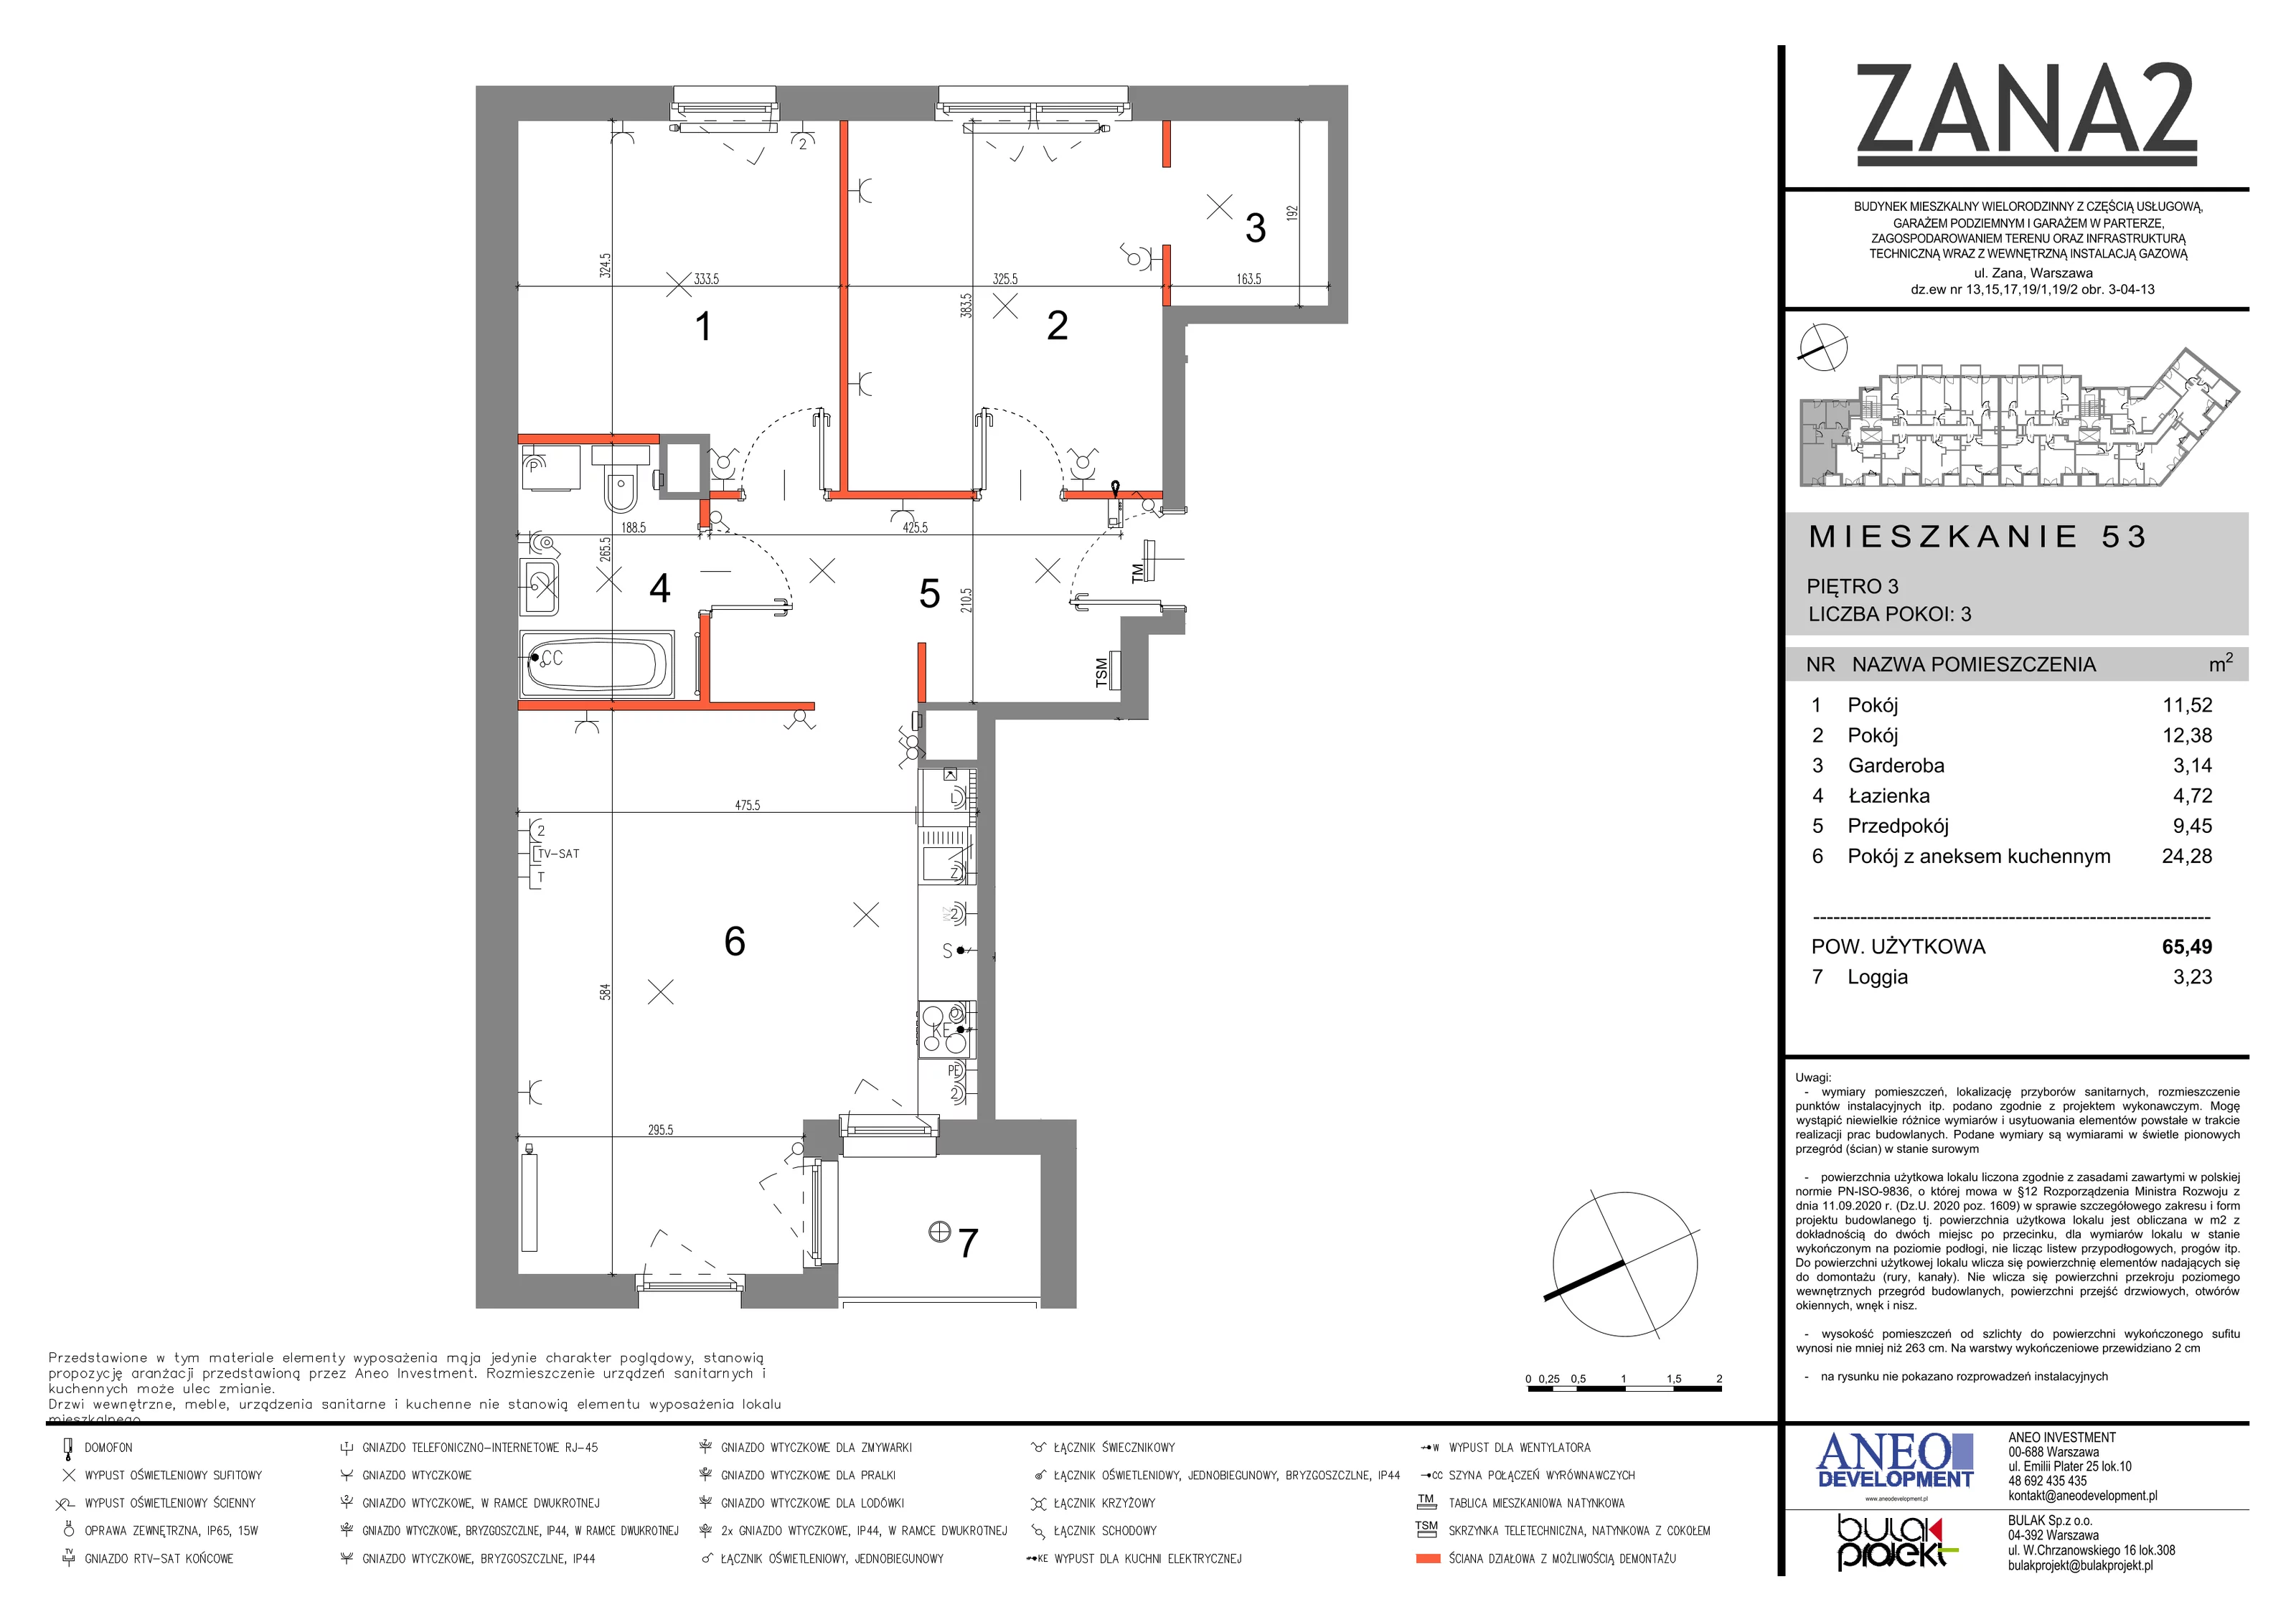 Mieszkanie 33,56 m², piętro 3, oferta nr 53, Zana 2, Warszawa, Praga Południe, Gocławek, ul. Tomasza Zana